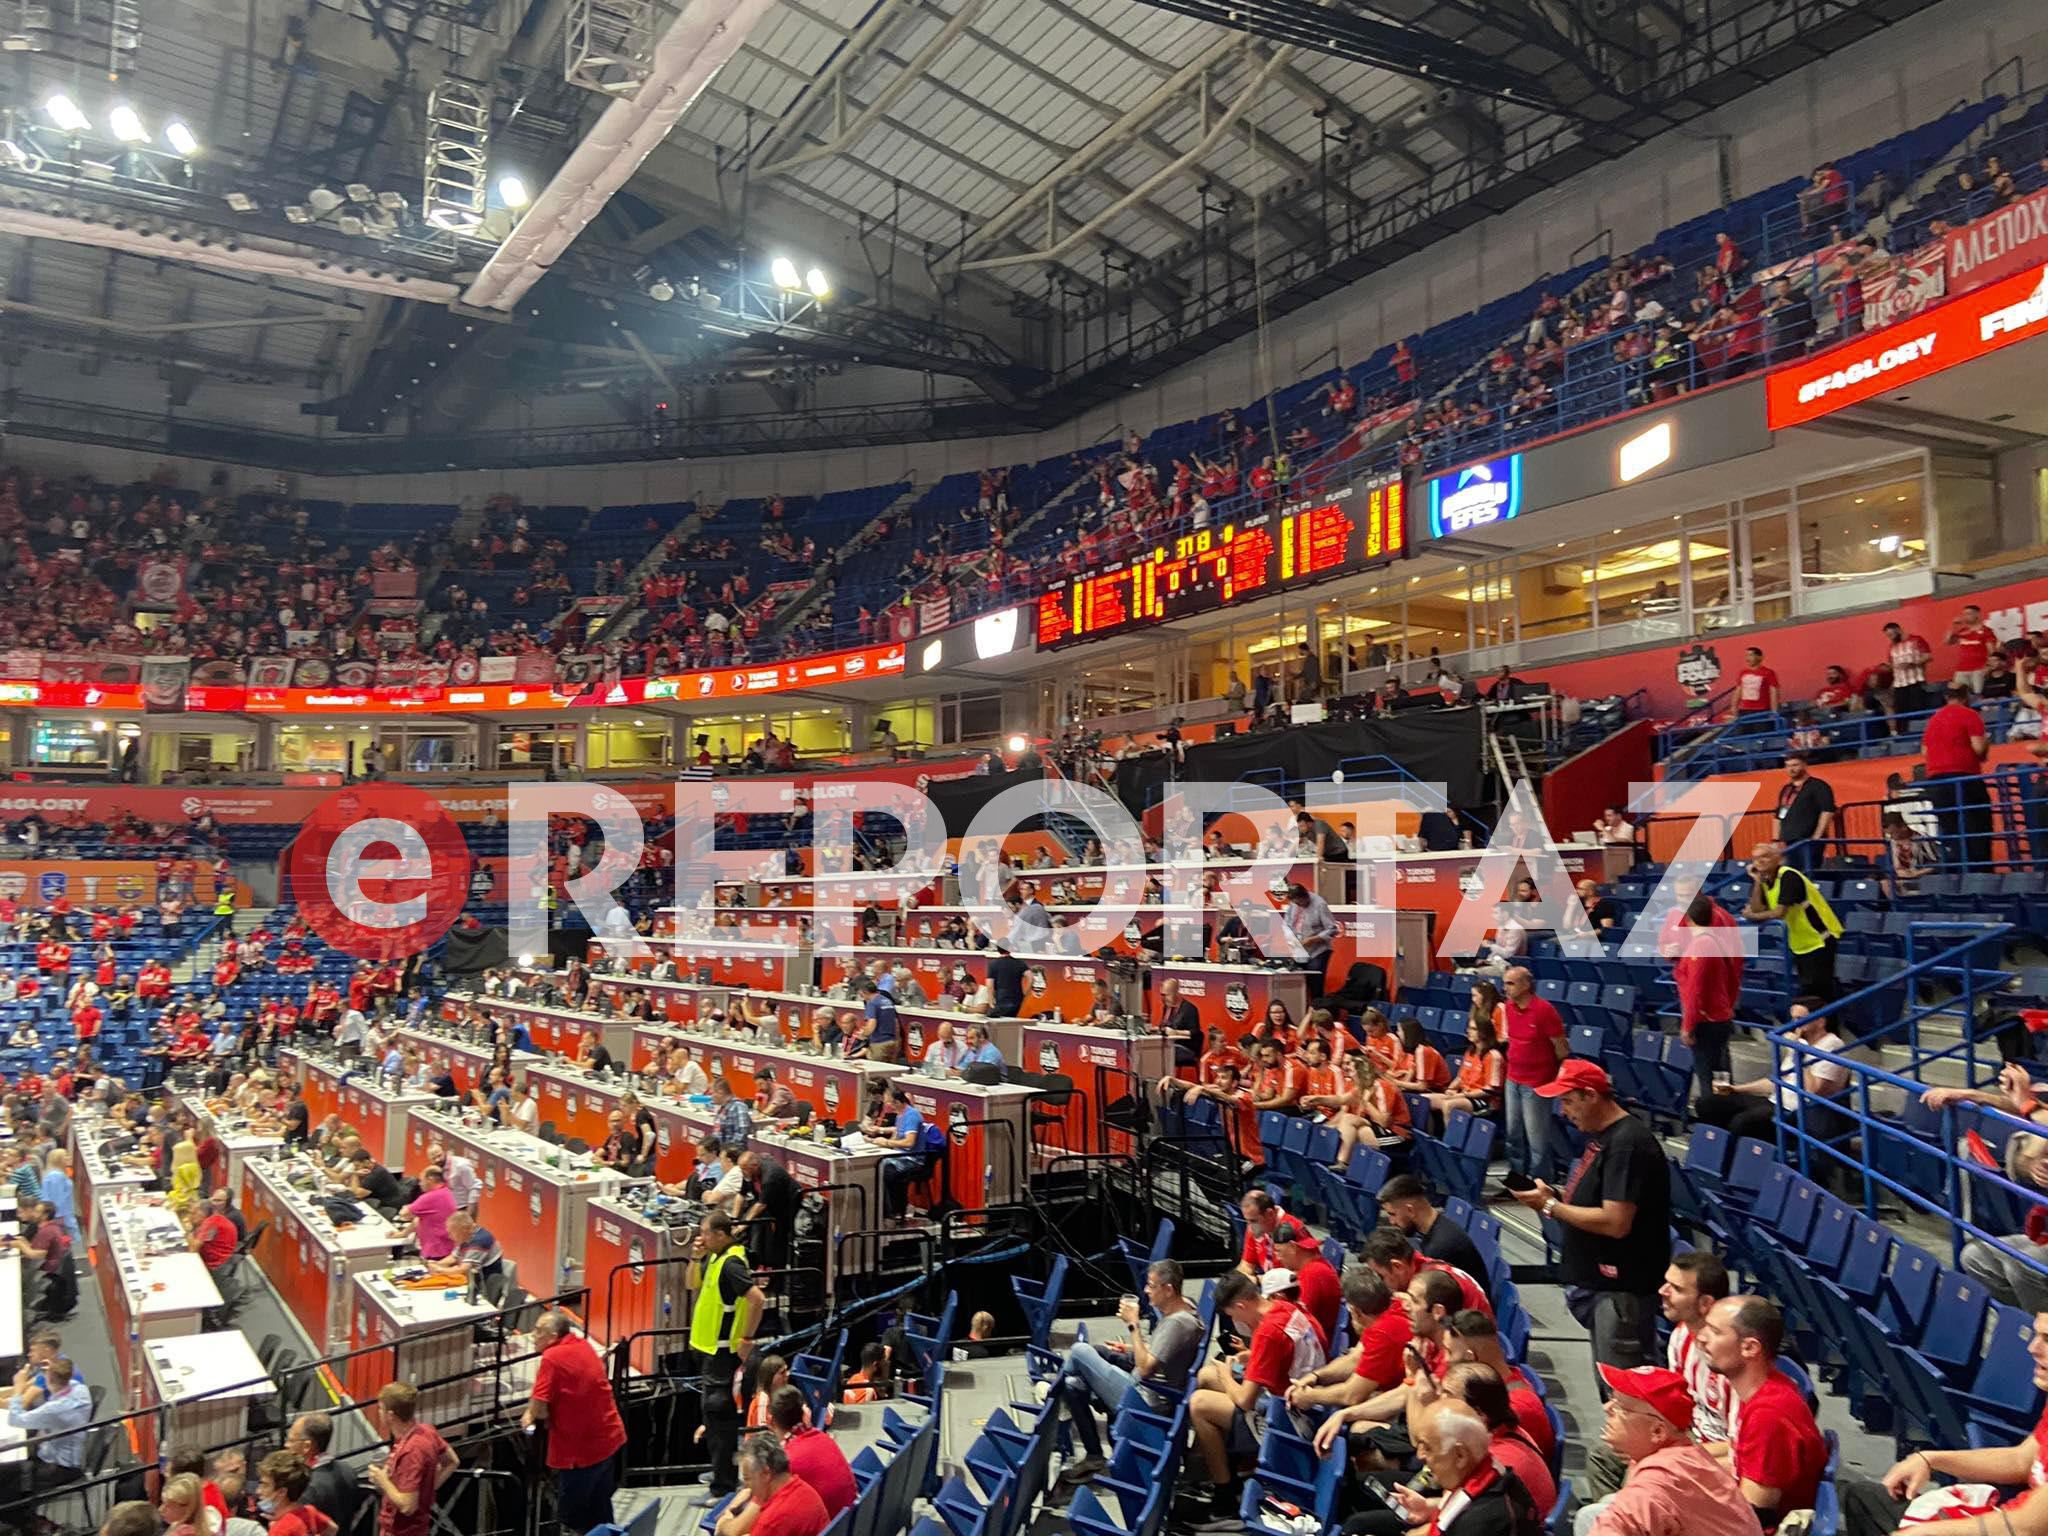 Stark Arena: Η ώρα του μεγάλου ημιτελικού - Αποστολή του eReportaz στο Βελιγράδι